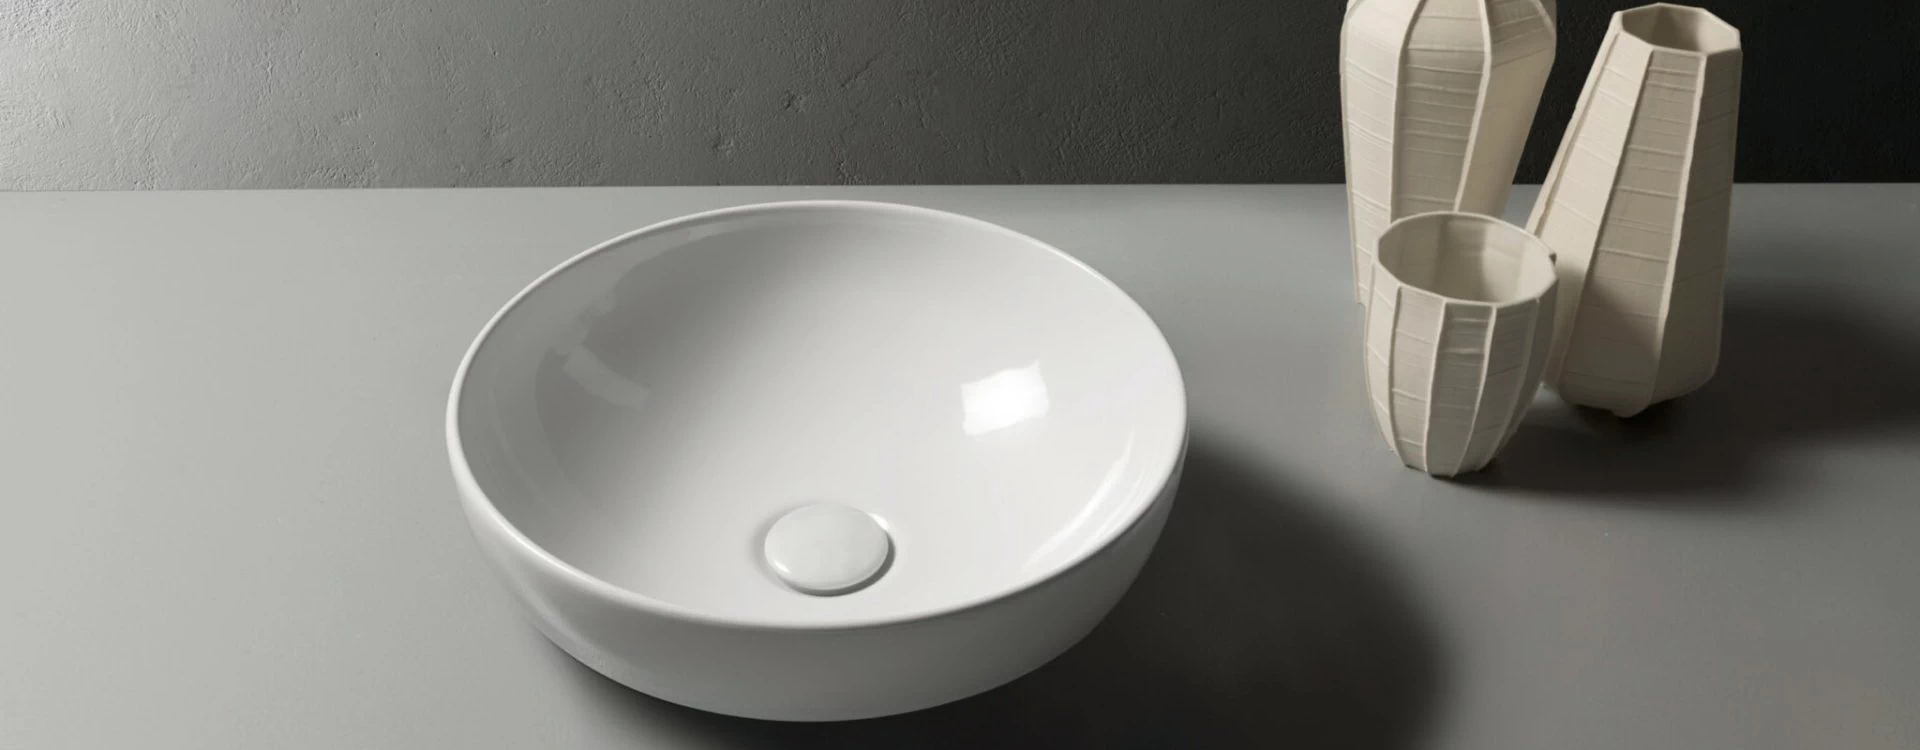 Sanitari bagno Globo Ceramica Torino - Icos per la Casa